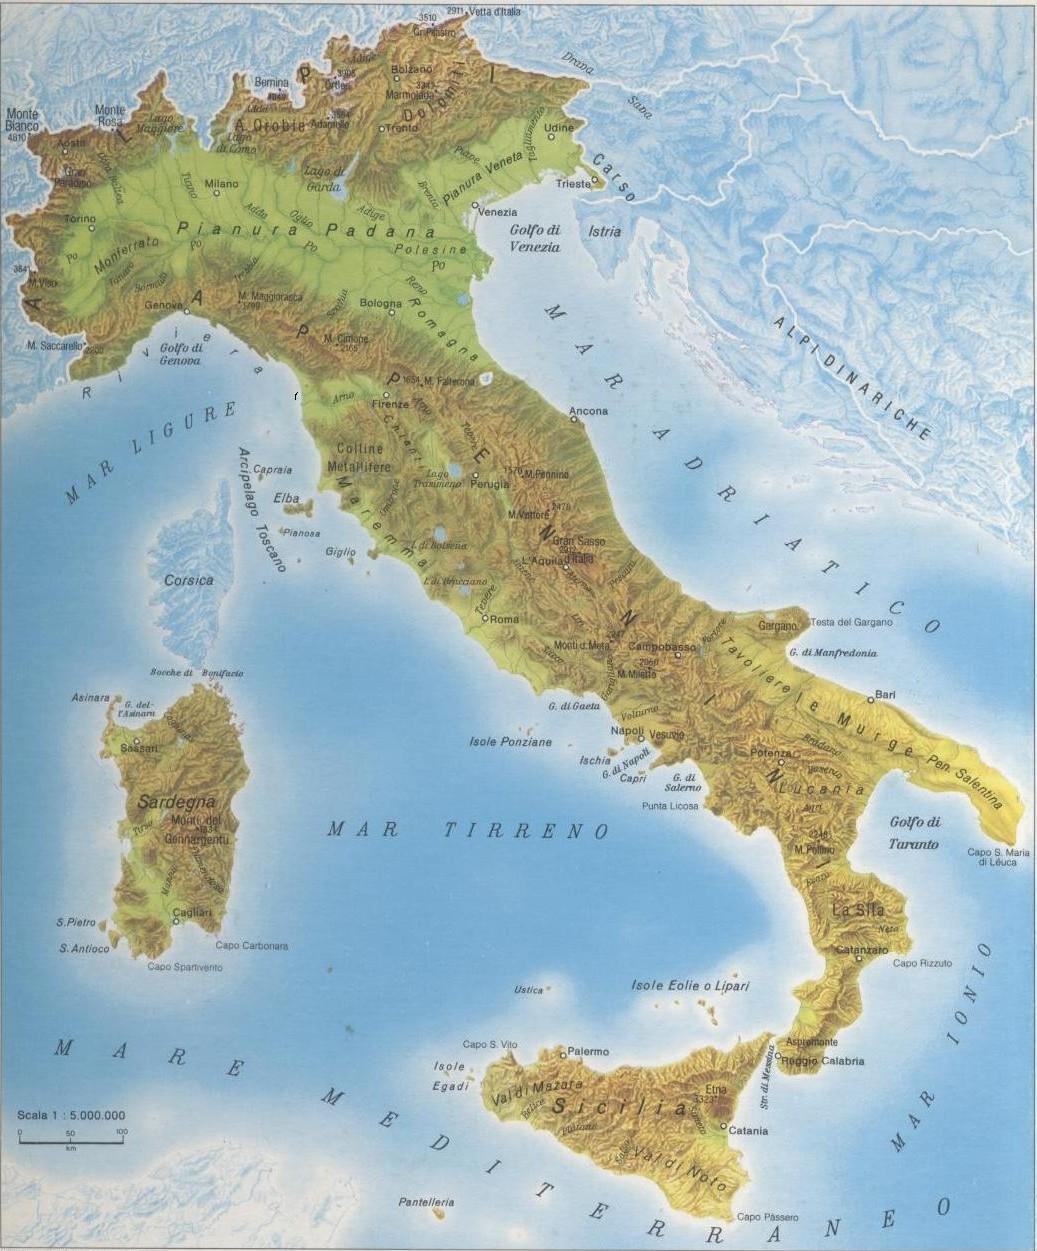 Olaszország Területe: 30M ha 35%-a hegyvidék, 42%-a dombság 23%-a a sík terület Erdő 11M ha (nő, de biomassza felhaszn. csak 30 %) Mg.